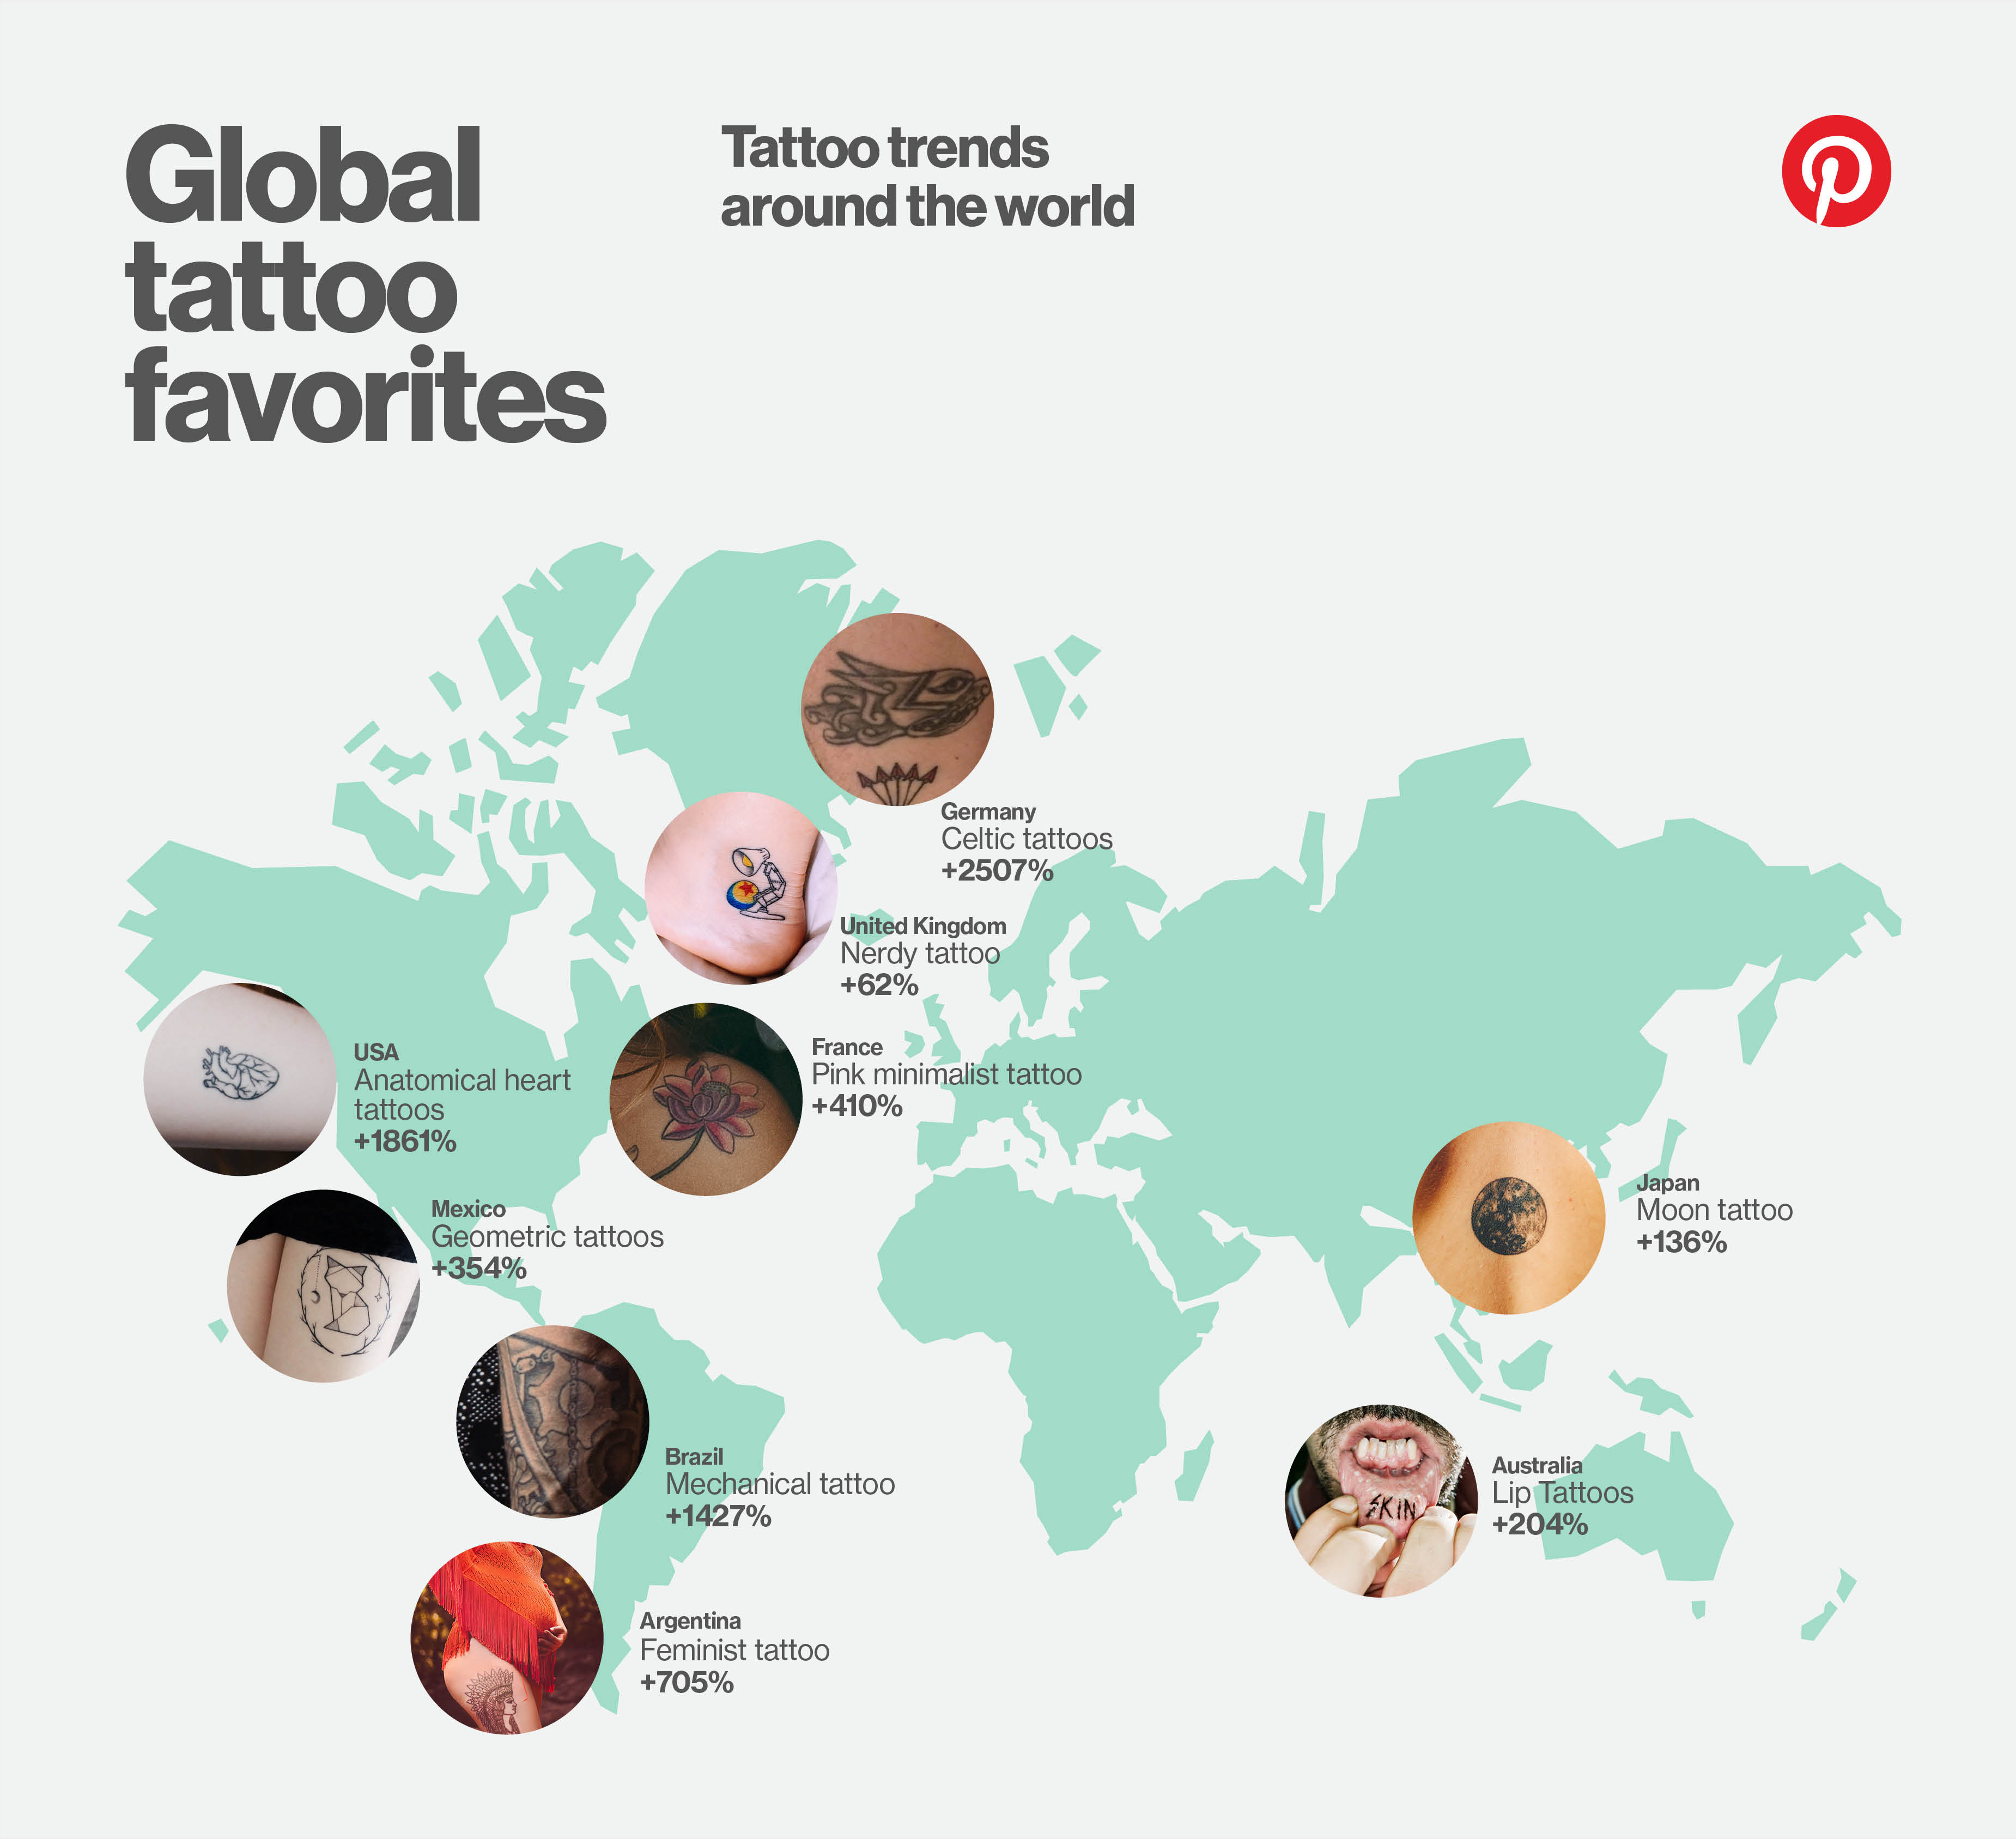 Les tendances de tatouages à travers le monde